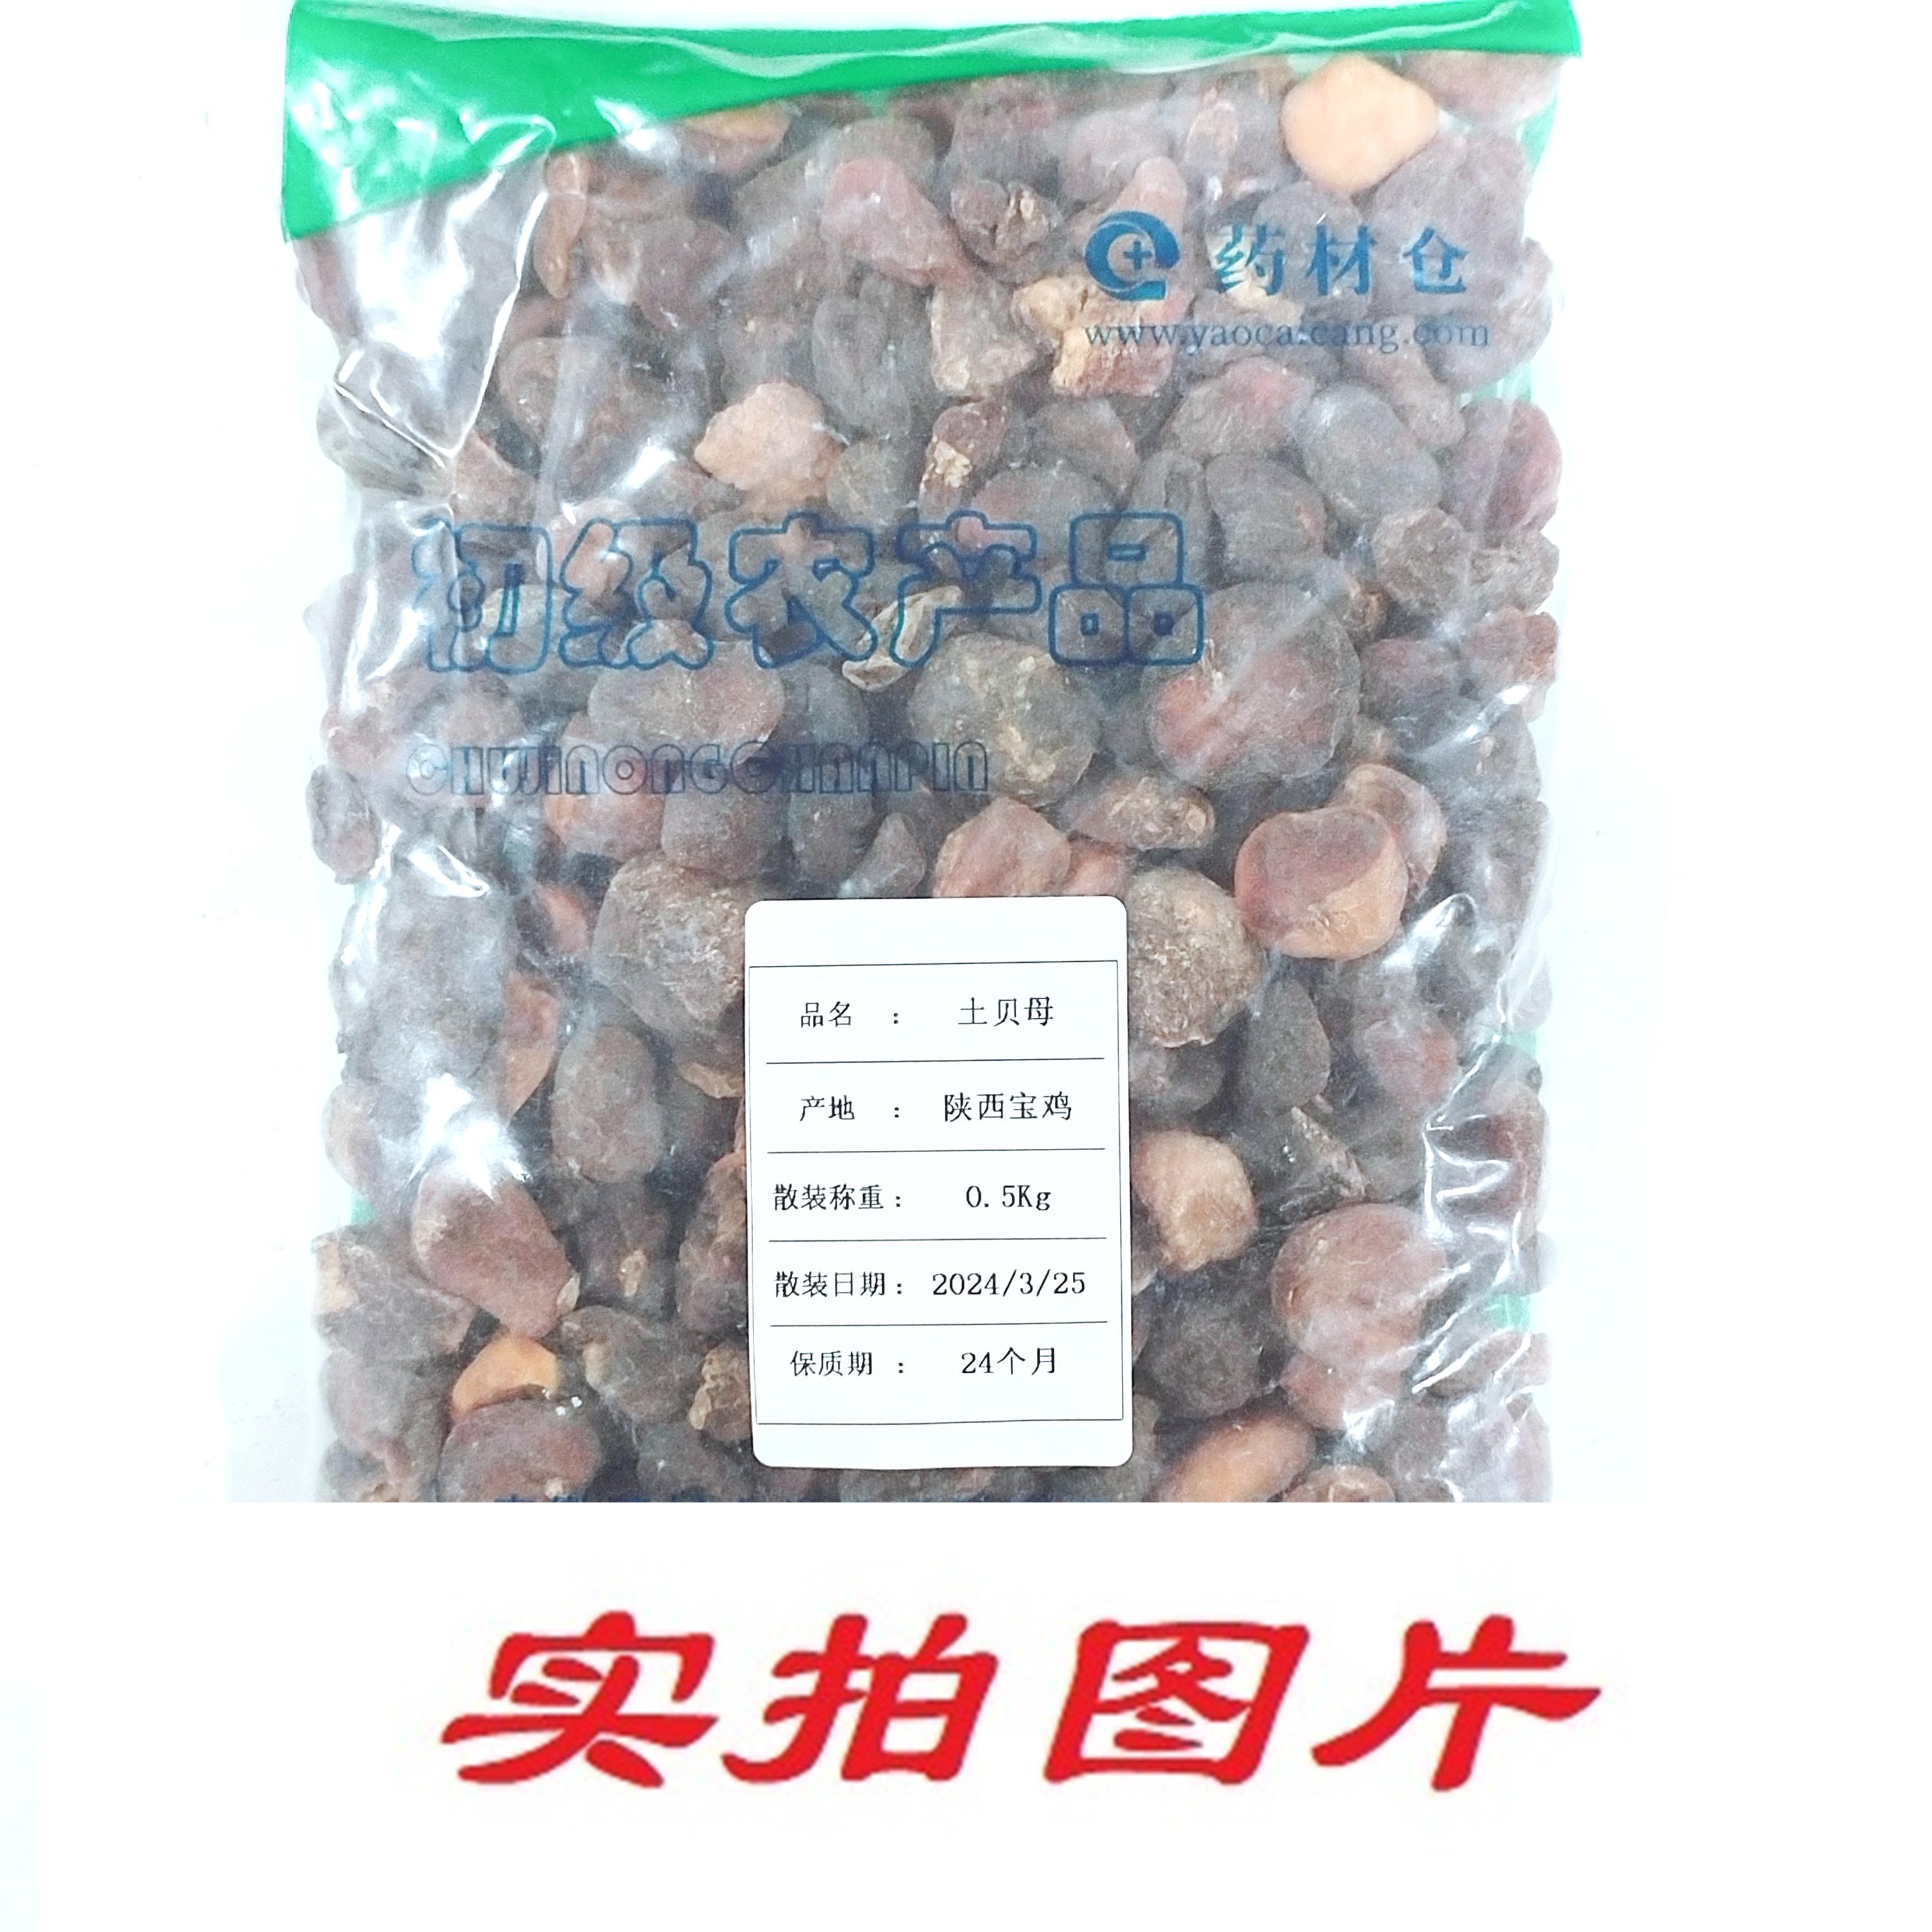 【】土贝母0.5kg-农副产品